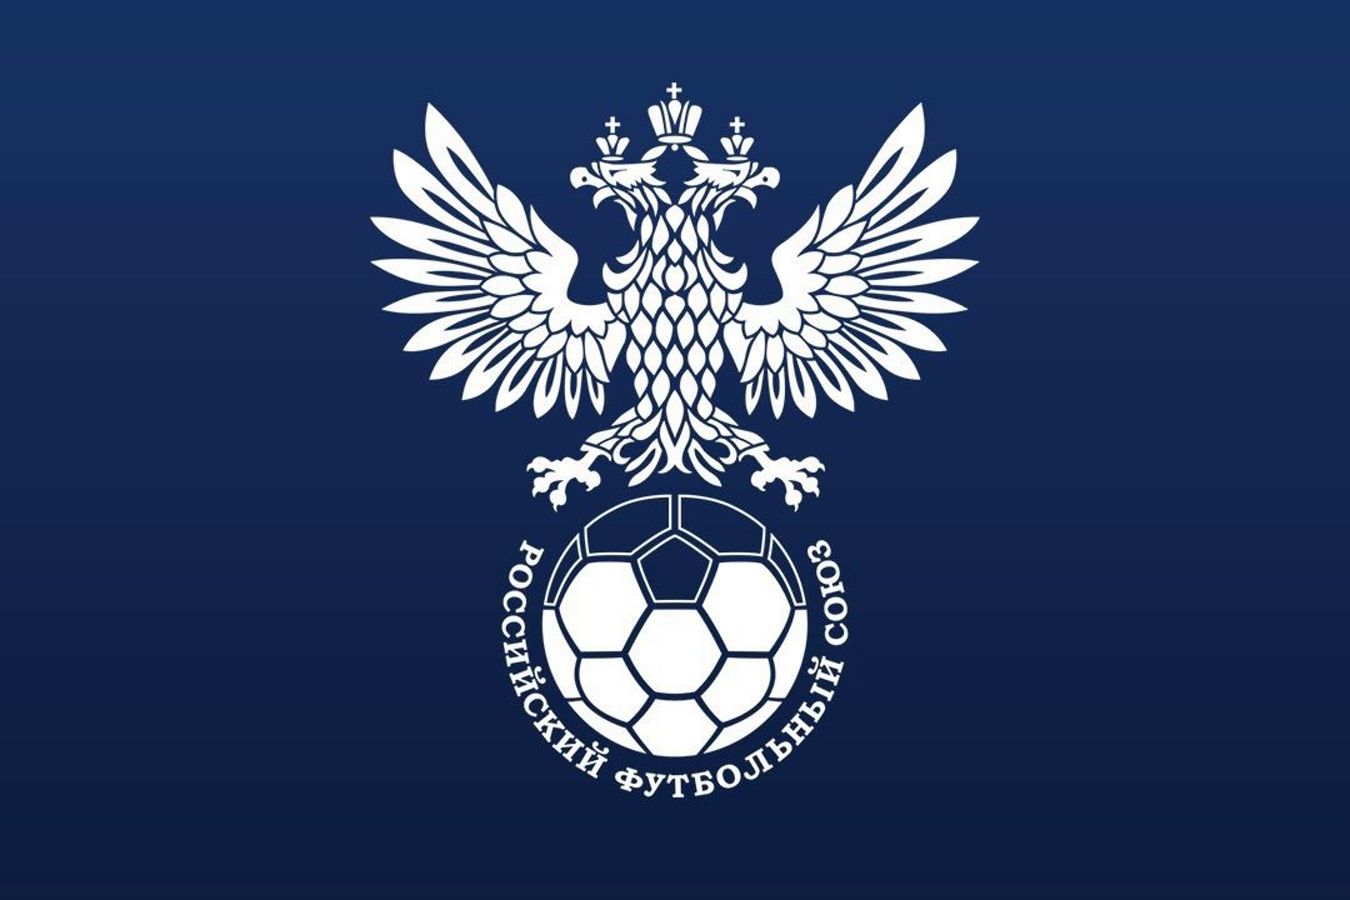 РФС ведёт переговоры с ФИФА и УЕФА о возвращении российских команд в международные турниры